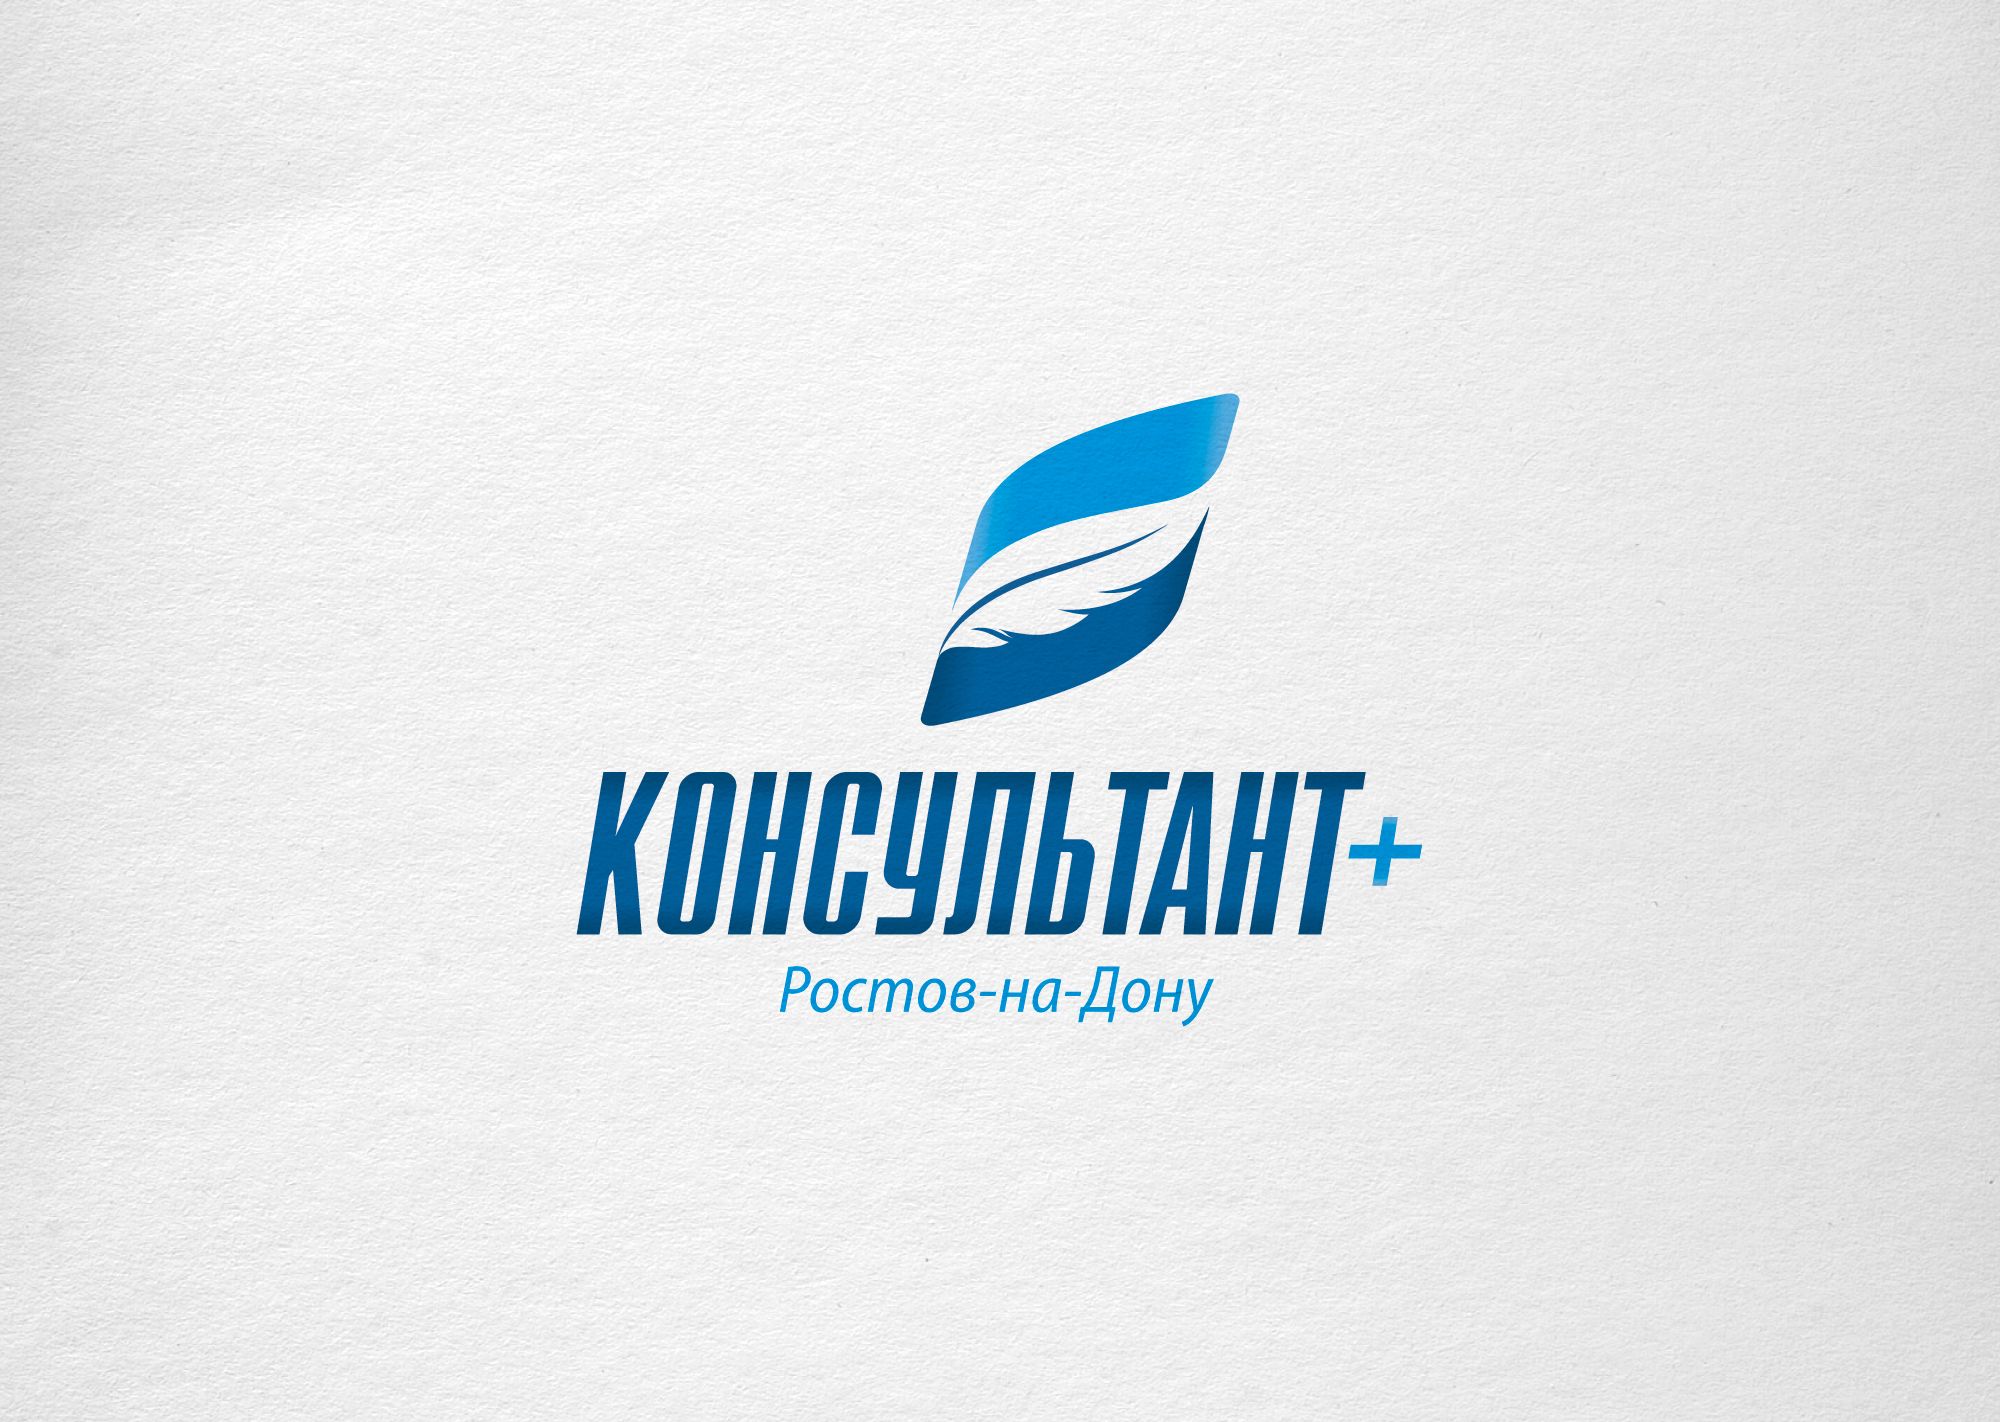 Лого и фирменный стиль для КонсультантПлюс-Ростов-на-Дону - дизайнер NukeD